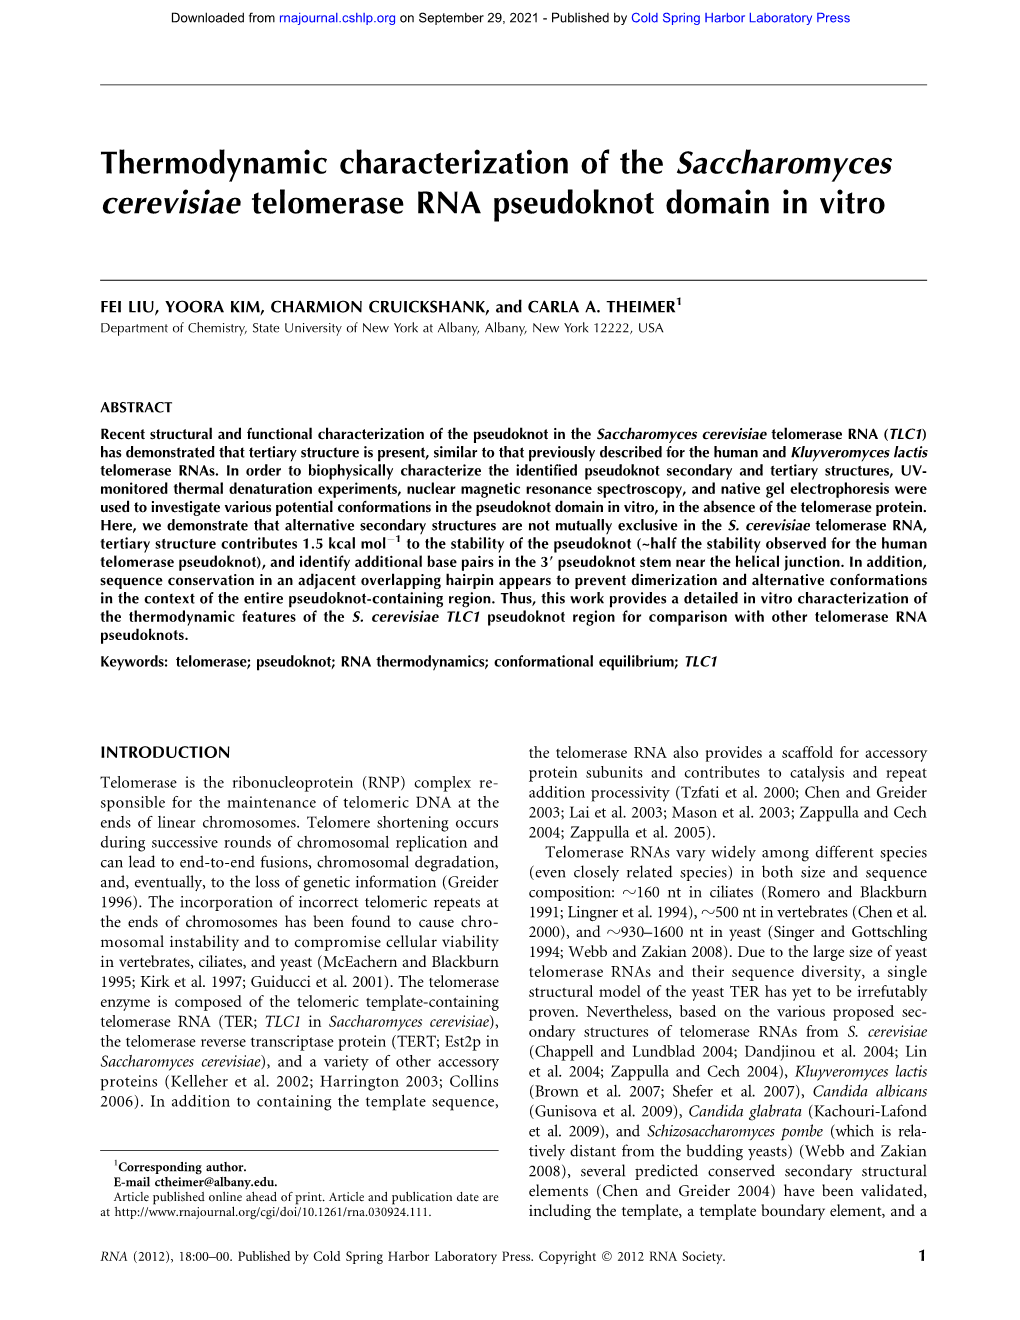 Thermodynamic Characterization of the Saccharomyces Cerevisiae Telomerase RNA Pseudoknot Domain in Vitro